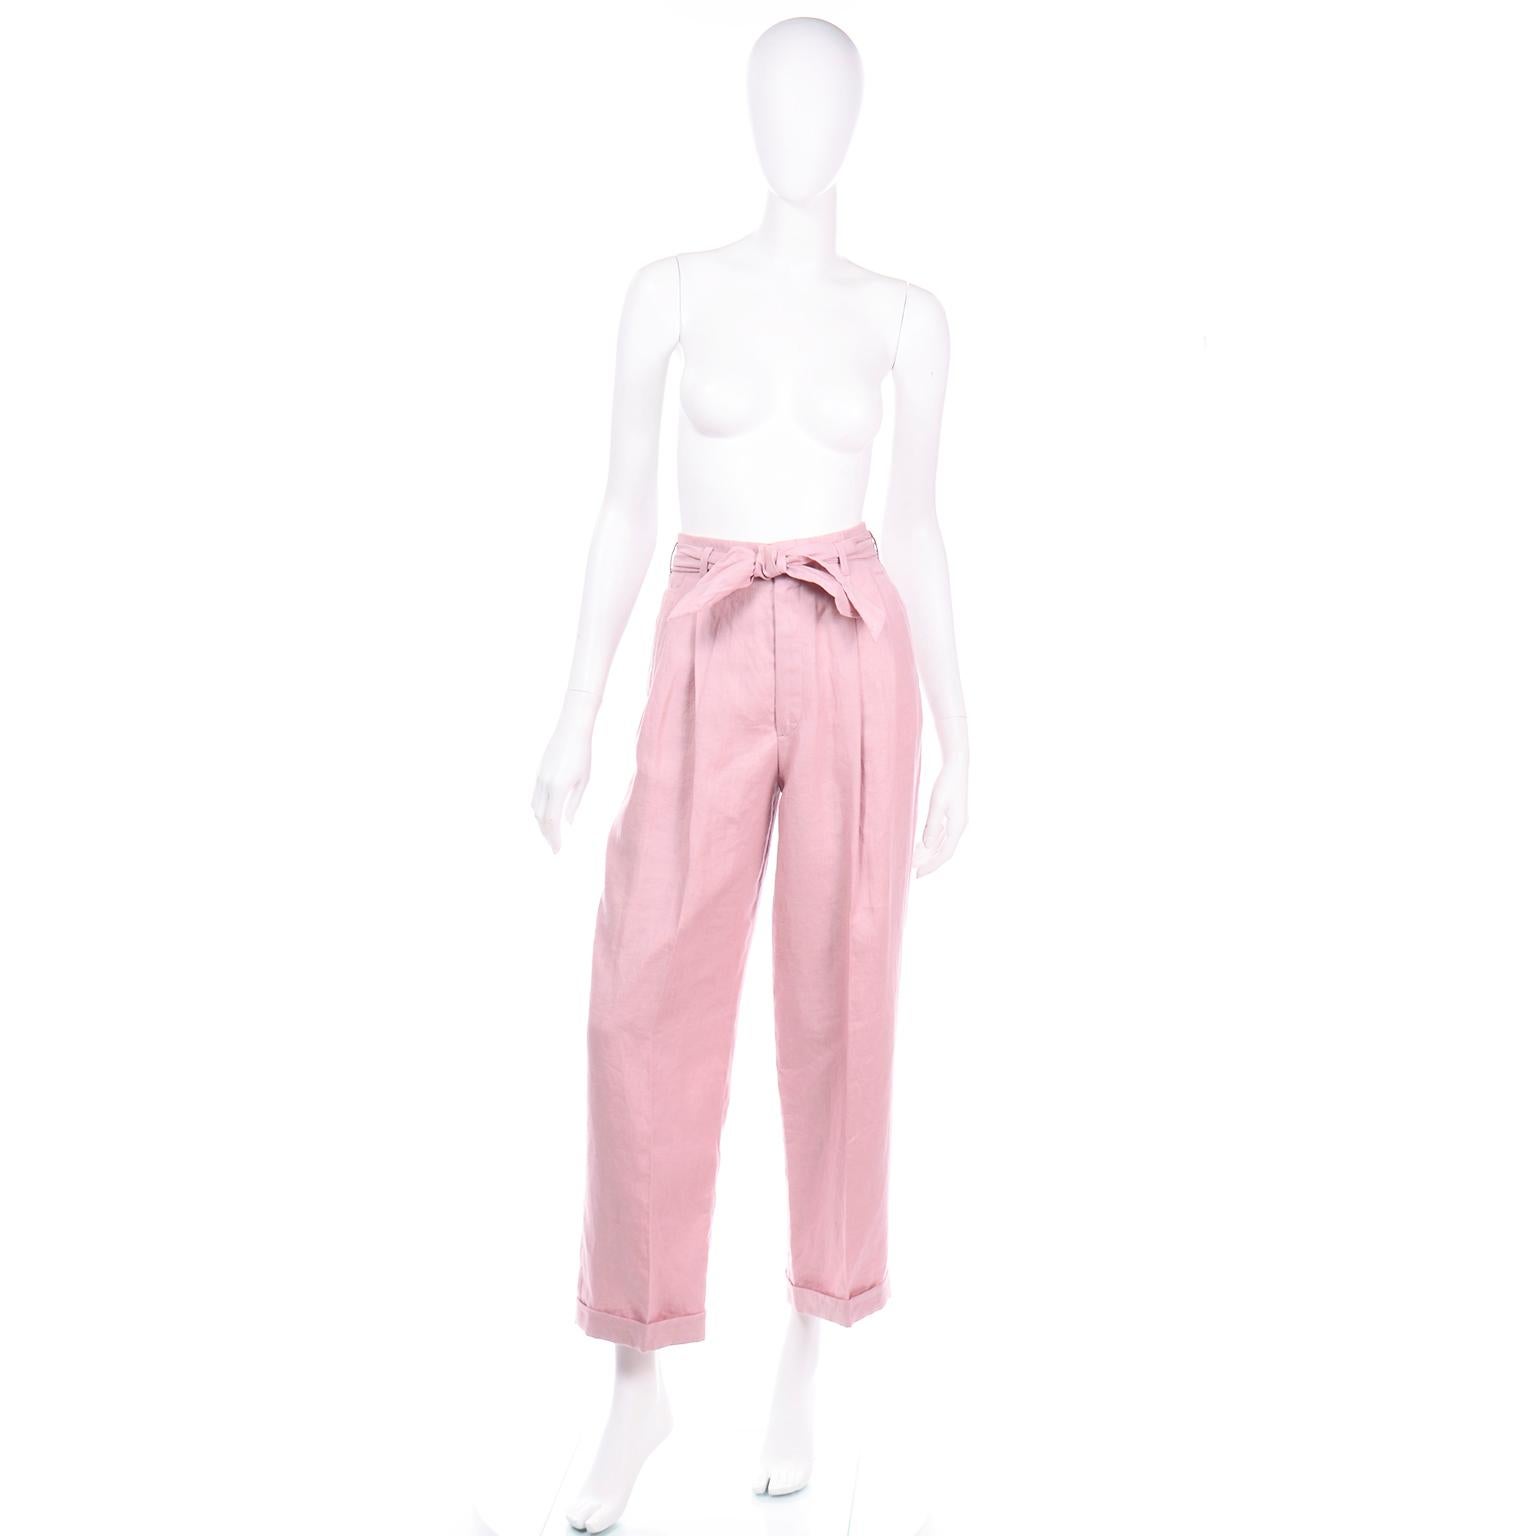 Diese rosafarbene Vintage-Leinenhose von Ralph Lauren ist so modern und würde sich nahtlos mit anderen zeitgenössischen Kleidungsstücken kombinieren lassen! Wir lieben den hübschen Mauve-Rosa-Ton und den tollen Stoffgürtel im Schärpenstil.